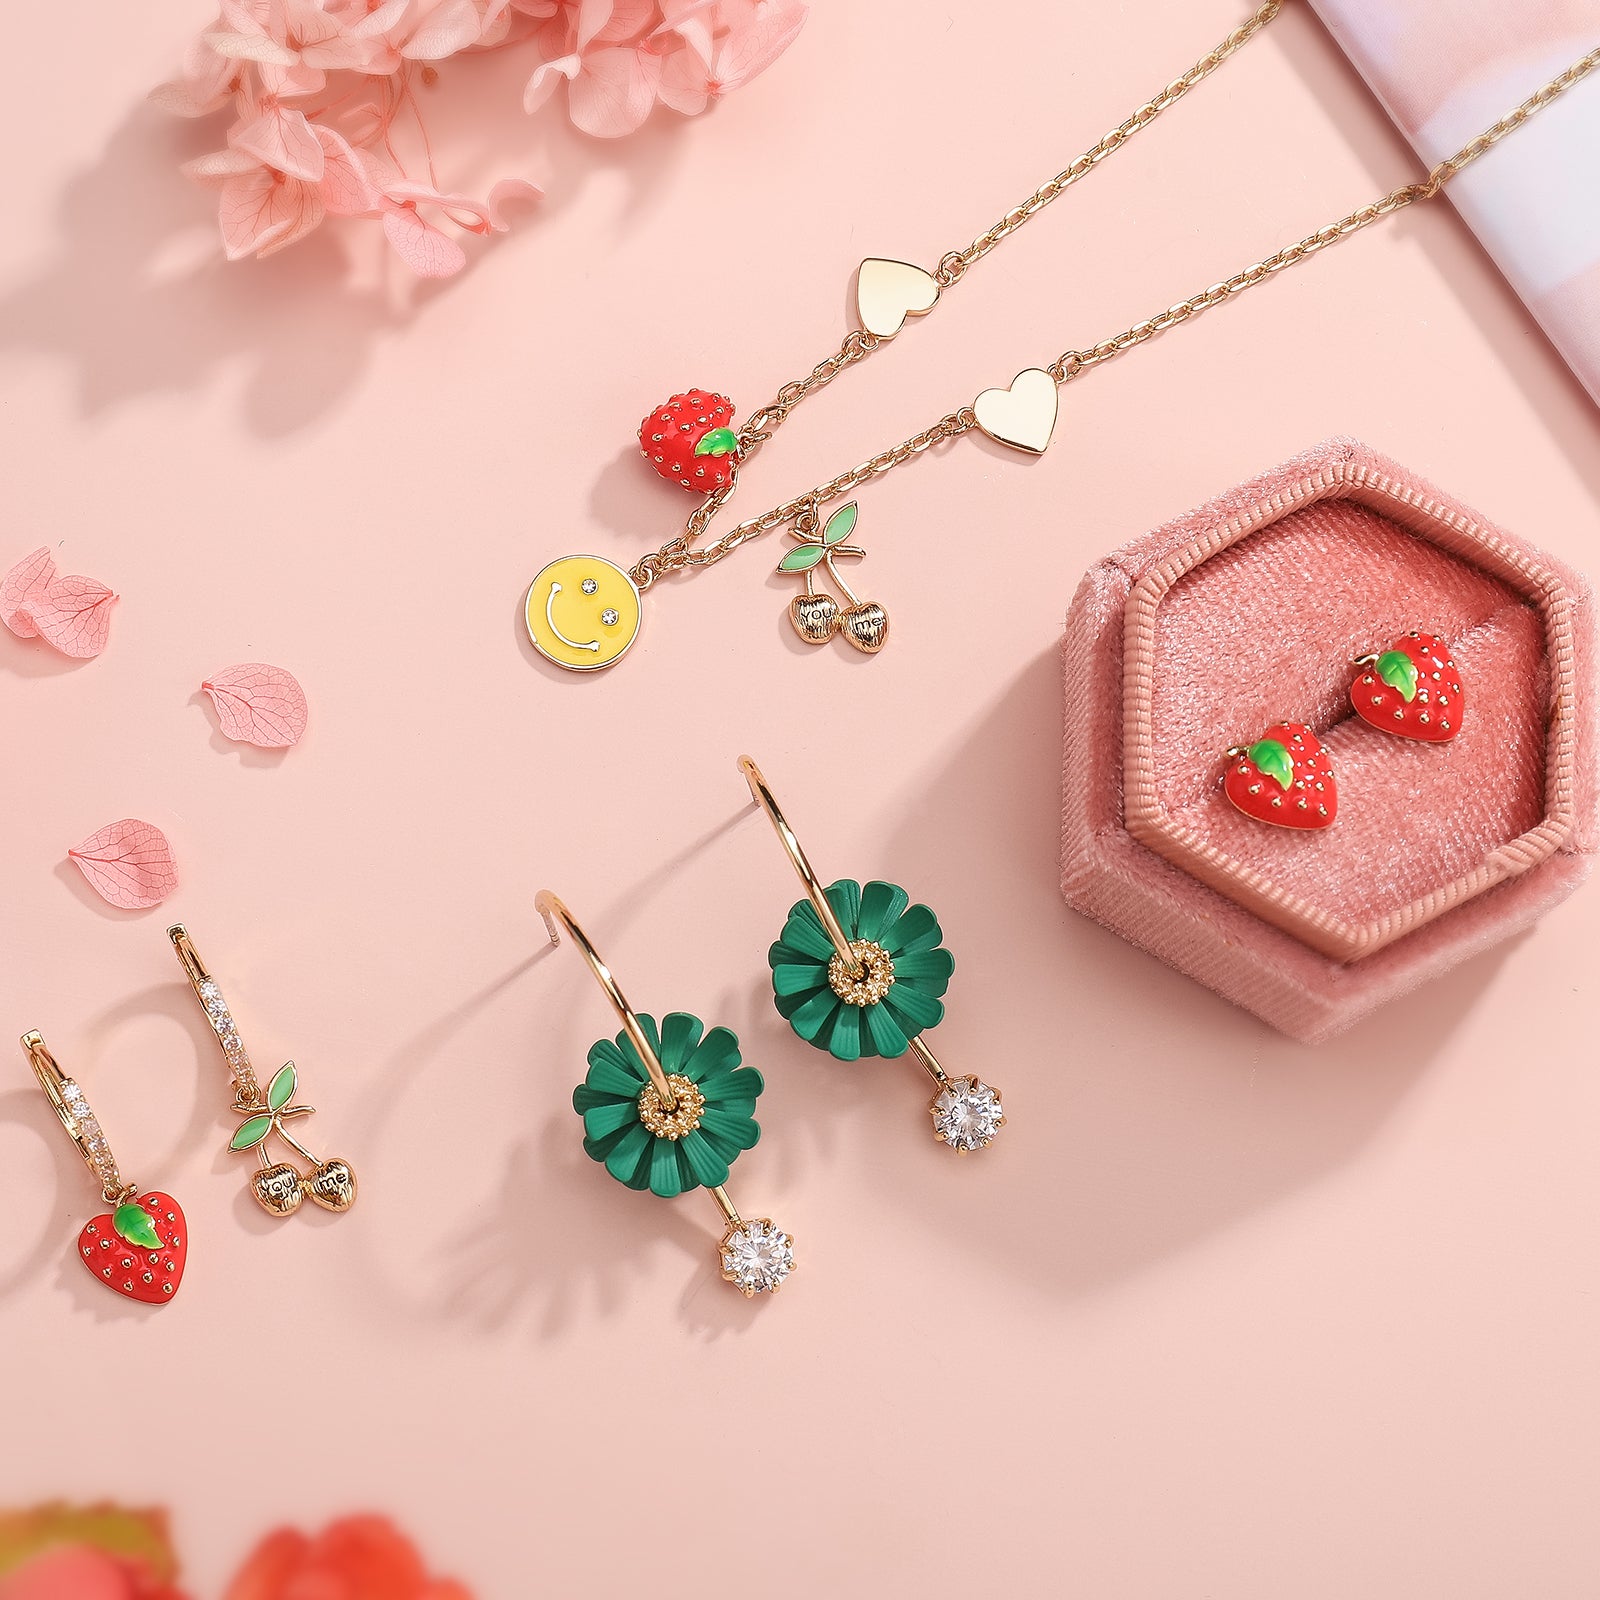 Strawberry Necklace Enamel Jewelry Set